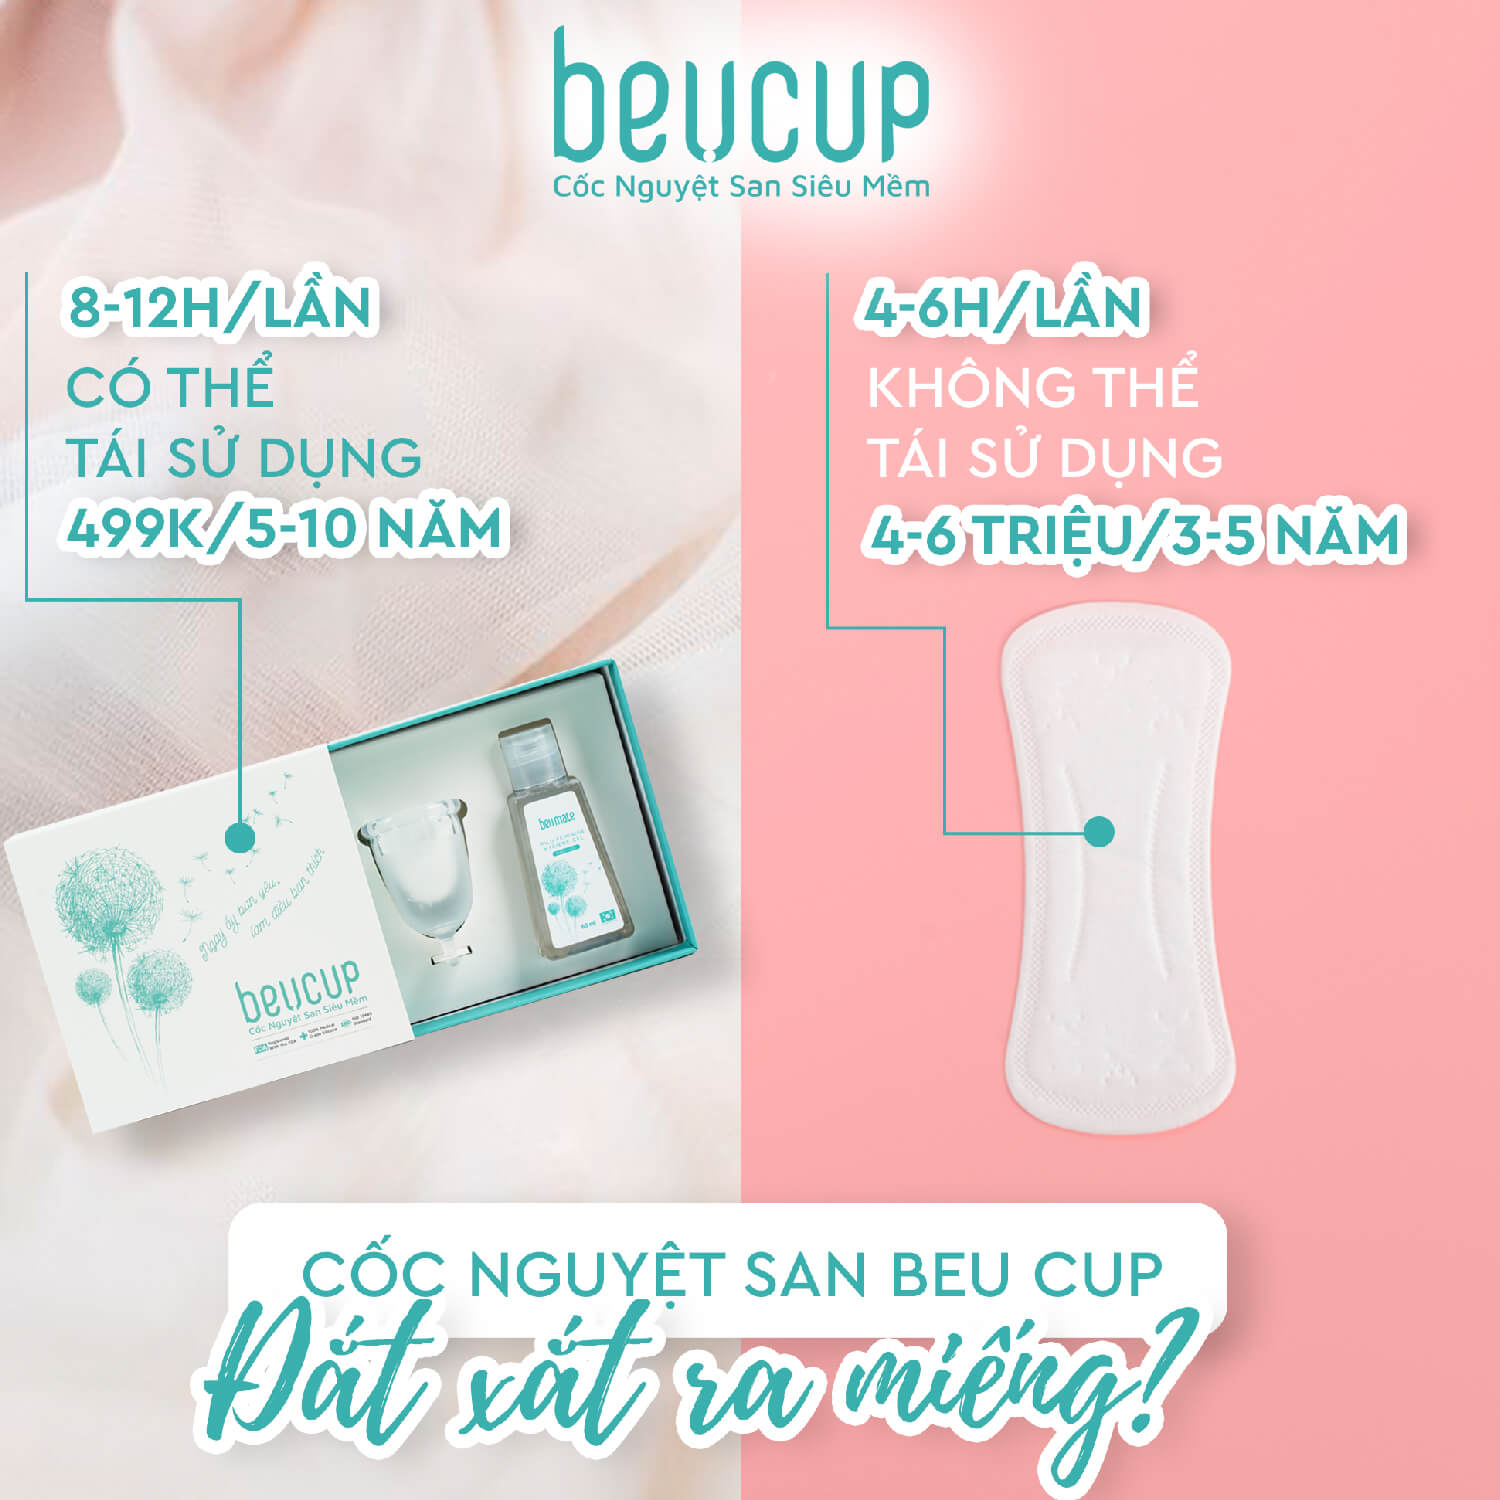 Combo Bộ 1 cốc nguyệt san BeUcup silicol y tế siêu mềm và 1 Dung dịch vệ sinh phụ nữ beUcare 100ml chính hãng